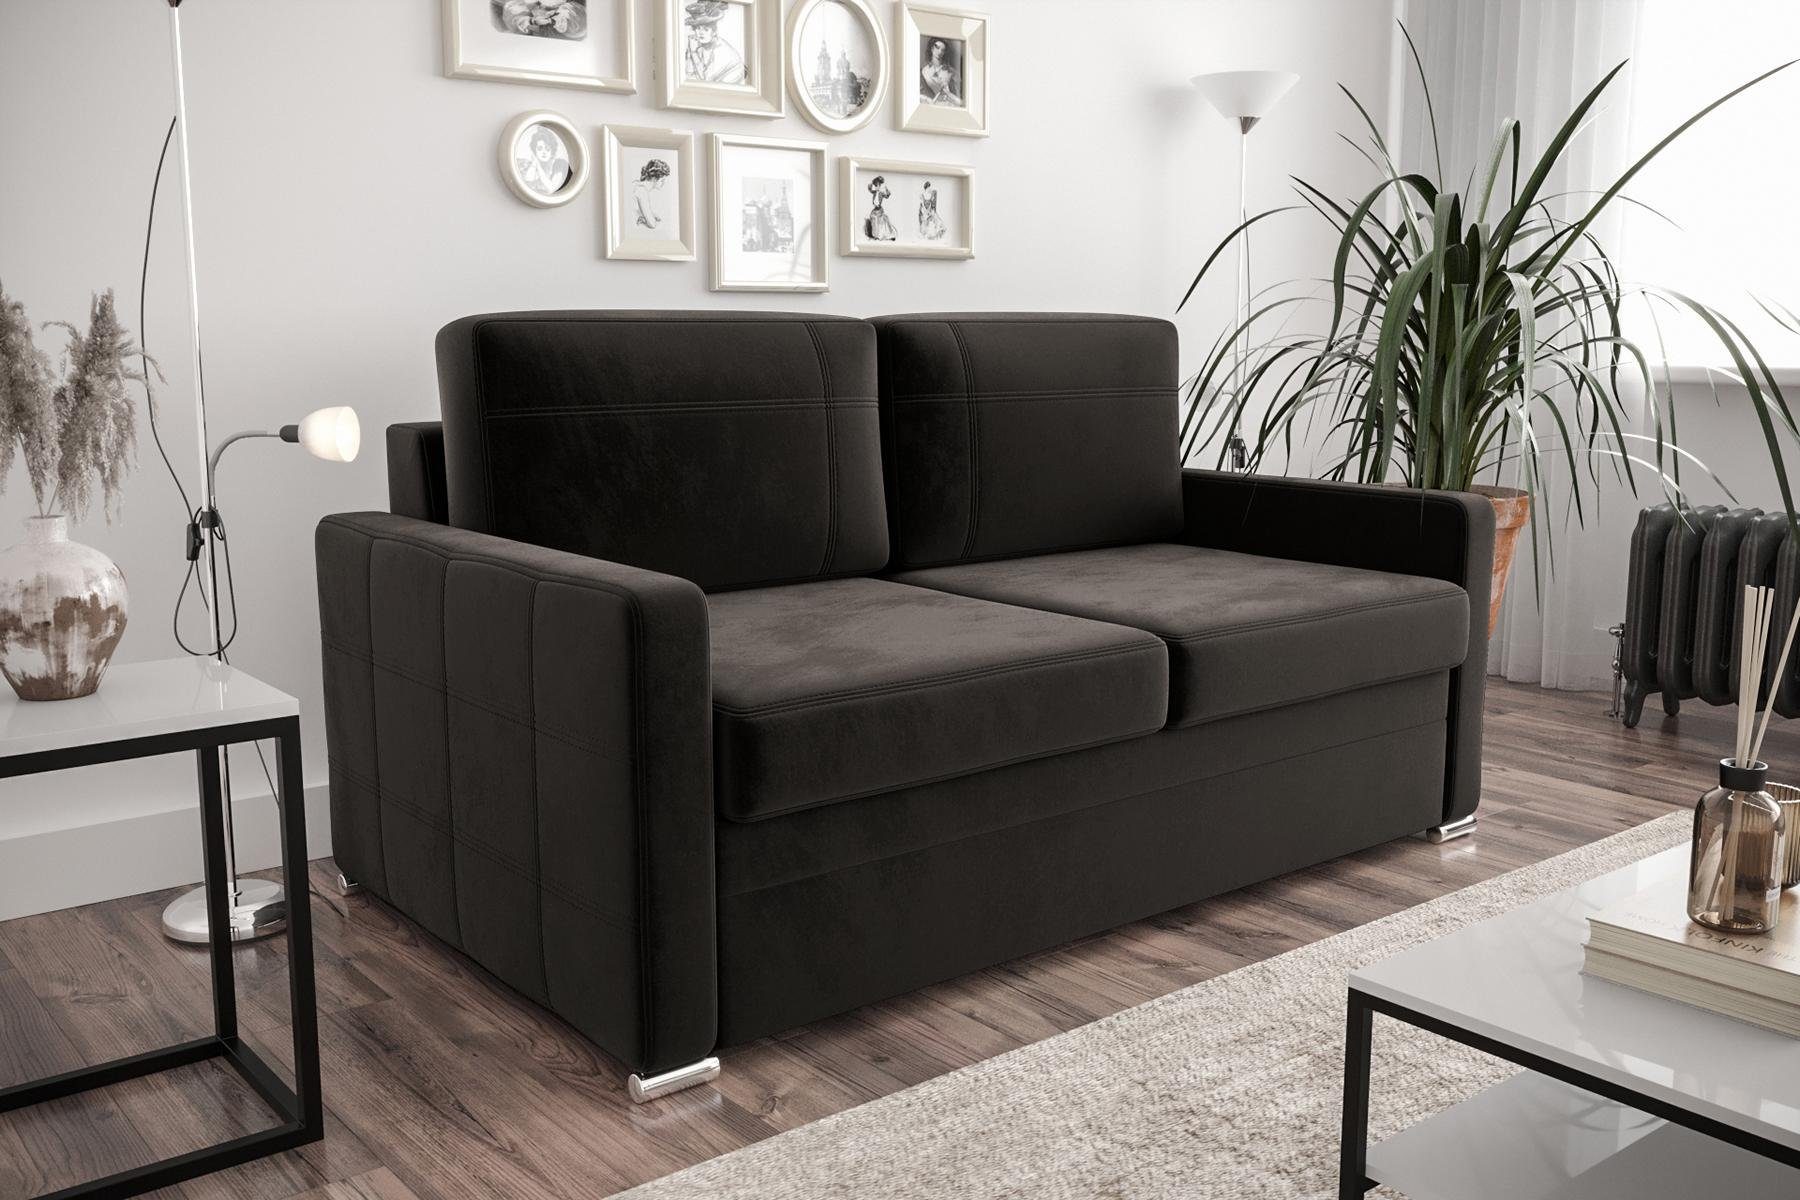 JVmoebel Sofa Designer 2-Sitzer Sofa Luxus Couch Polster Zweisitzer Couchen, Made in Europe Schwarz | Schwarz | Schwarz